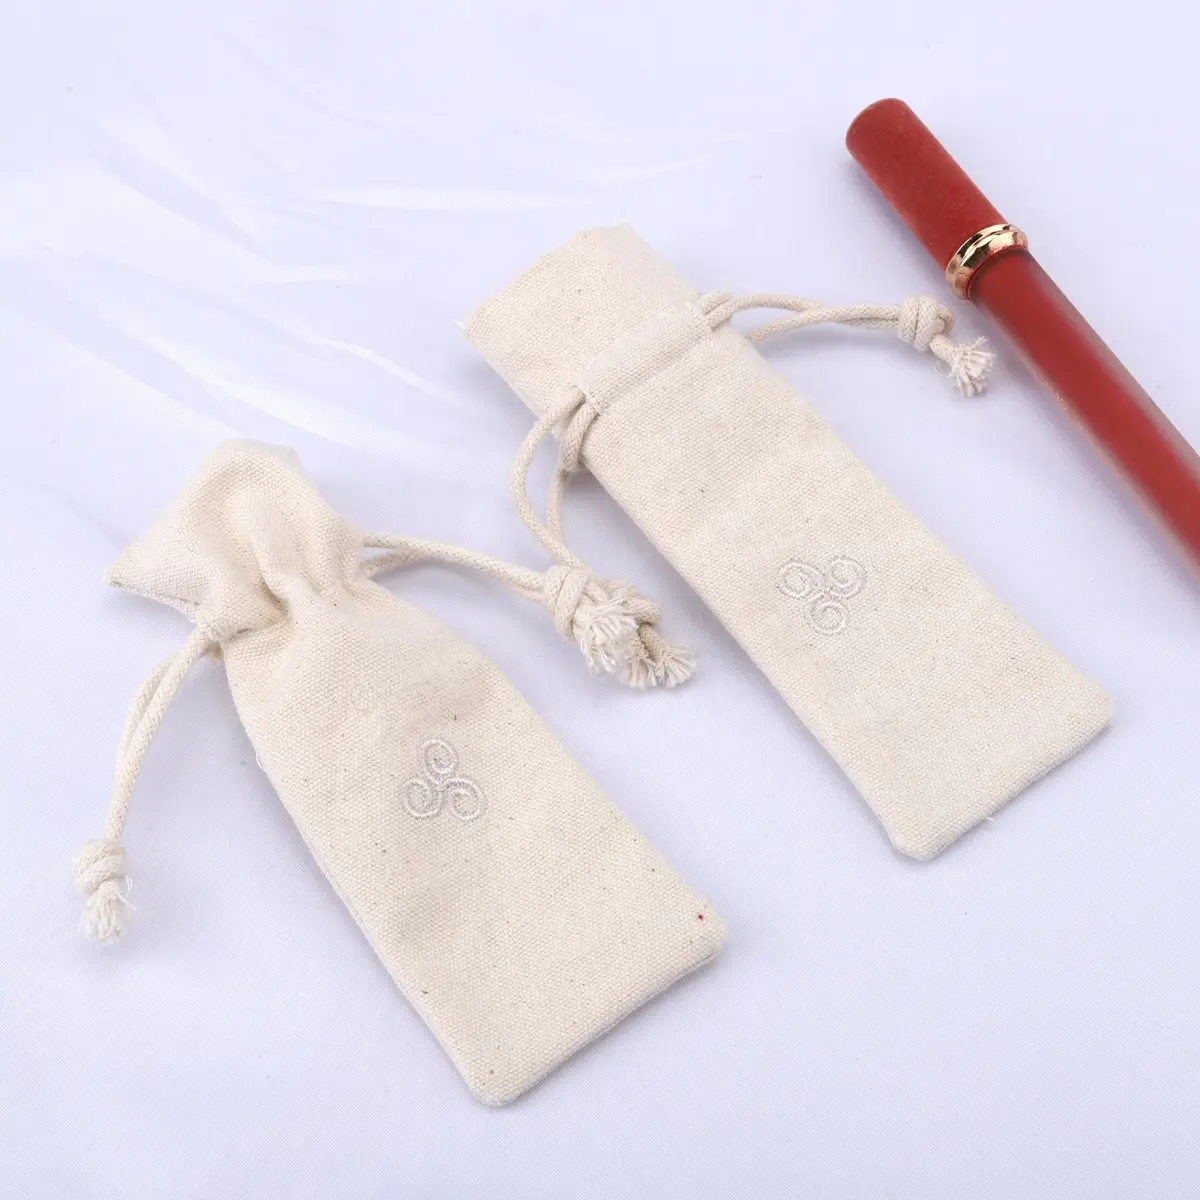 12 Unzen hochwertige Baumwolle Leinwand Make-up Beutel Kordel zug Staub Geschenk verpackung Leinwand Tasche für Lippenstift